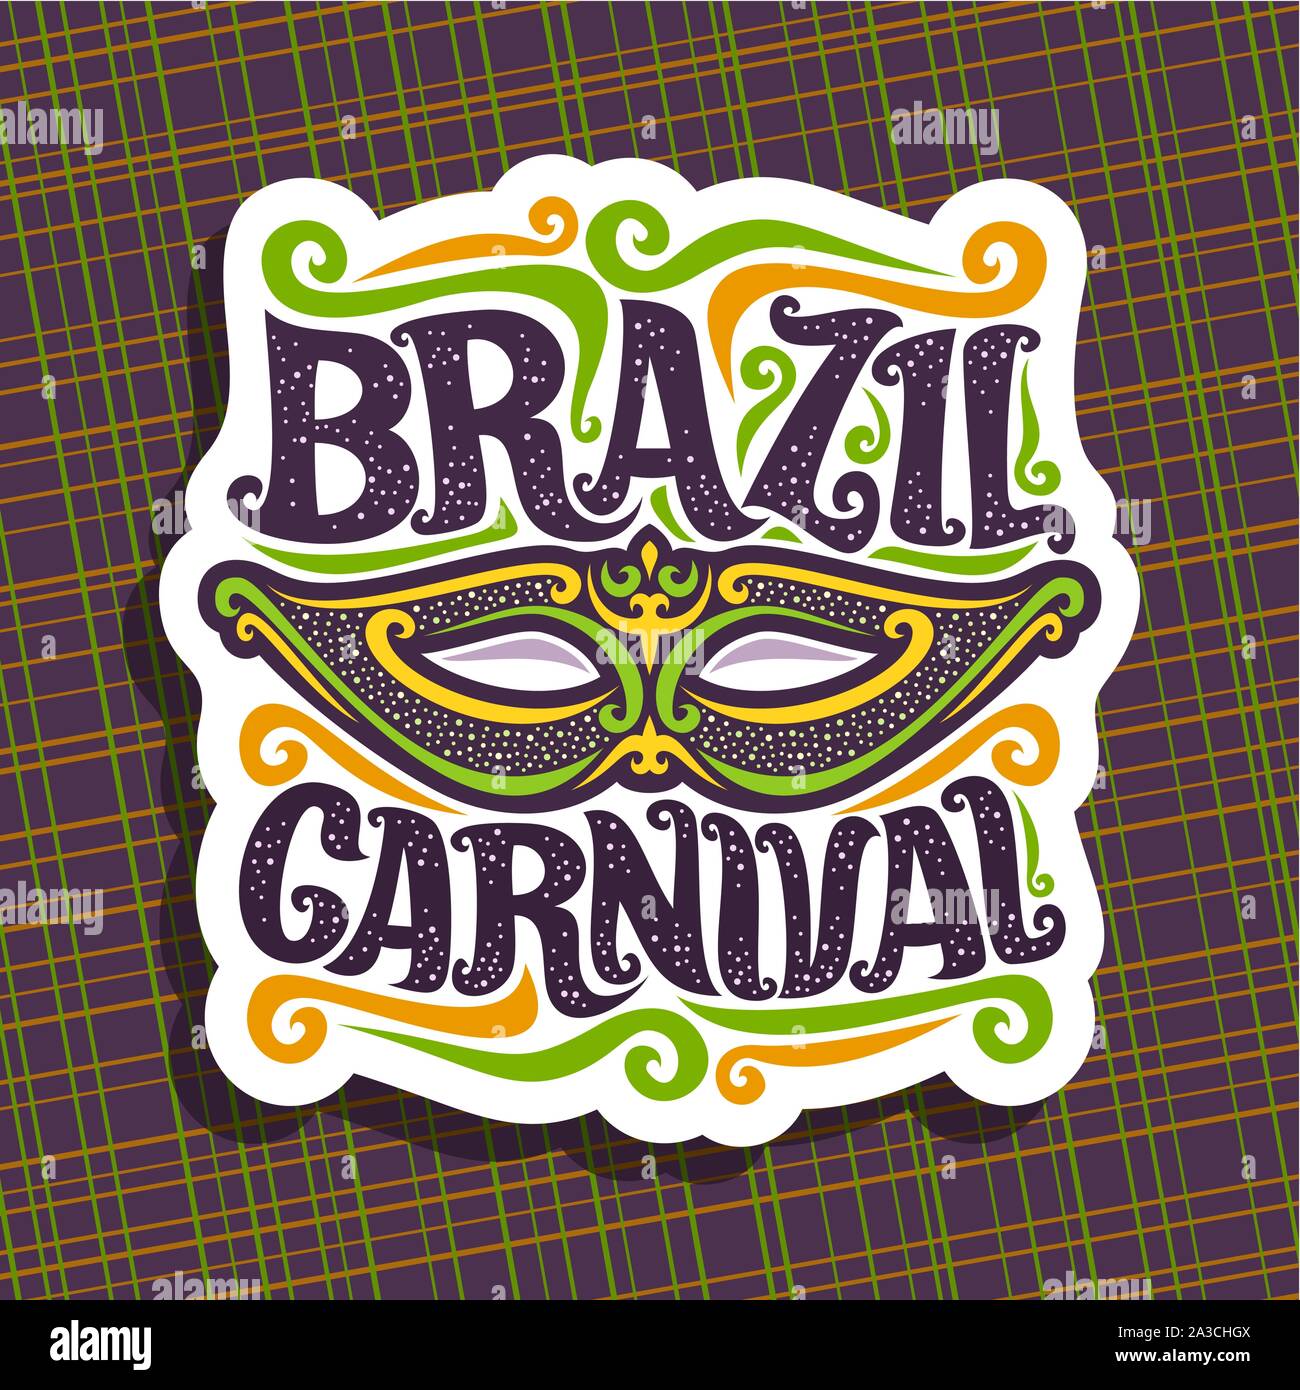 Logo vector pour le Brésil, avec l'affiche de carnaval masque national brésilien, banderoles colorées, police d'origine pour les fêtes de carnaval Brésil texte foncé sur abstra Illustration de Vecteur